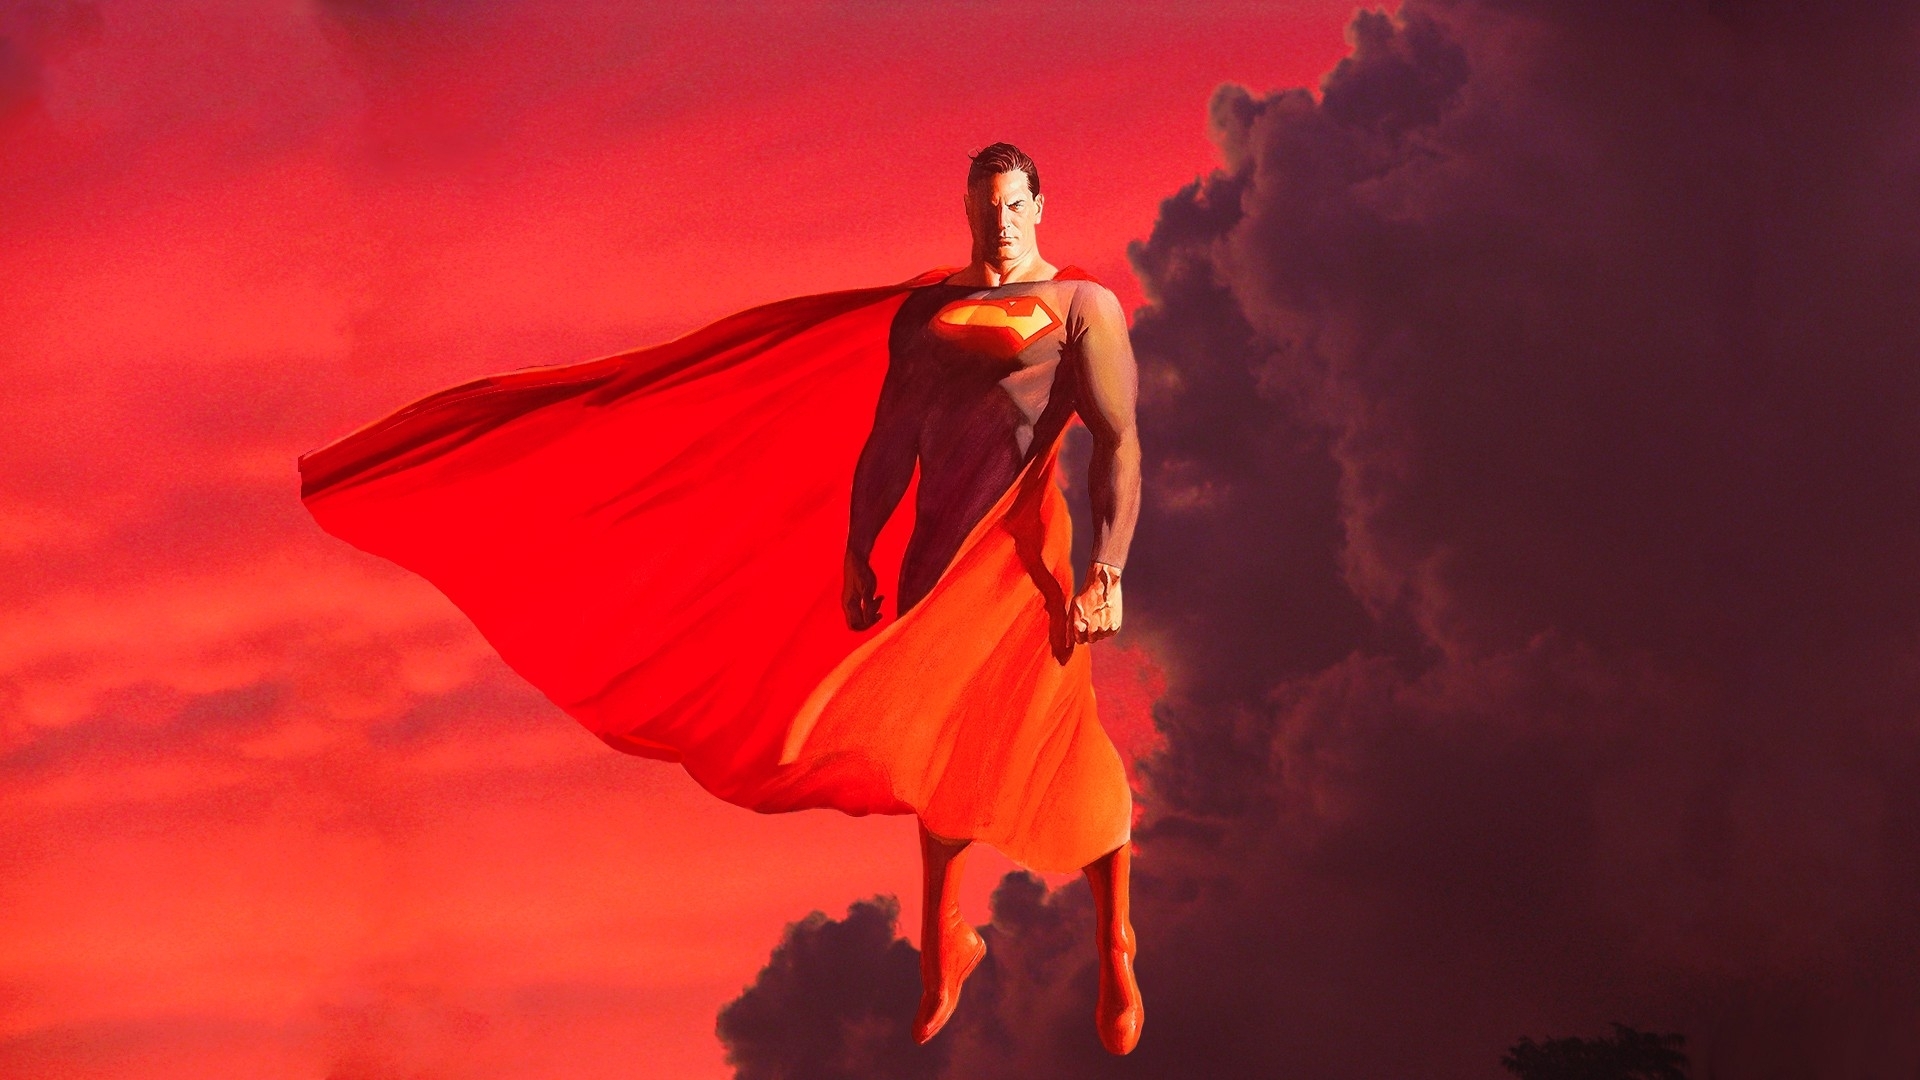 Superman Alex Ross Wallpaper Best Top